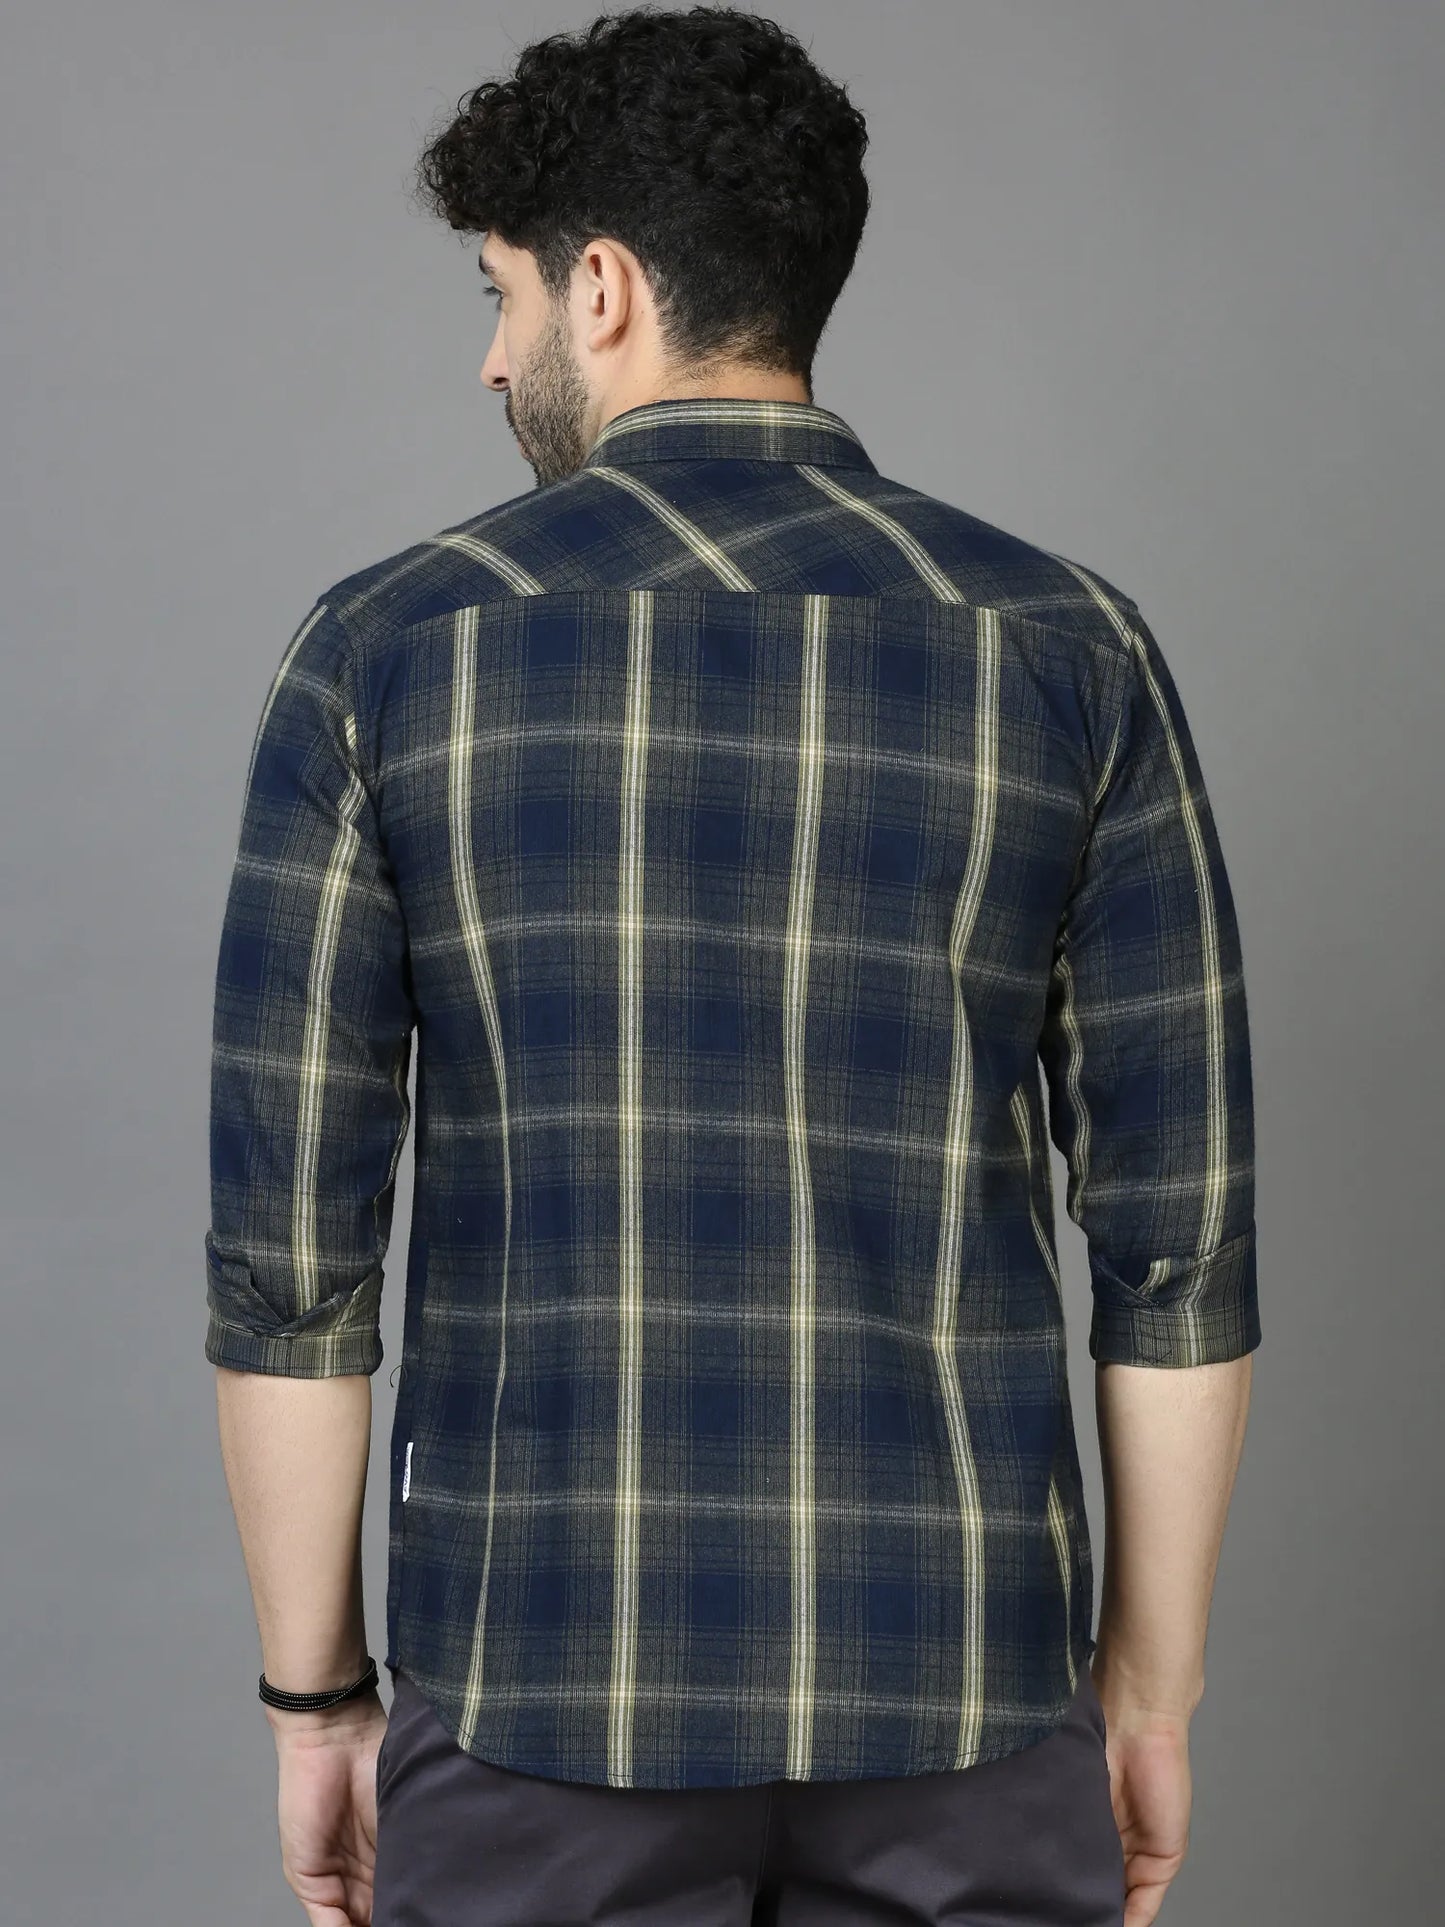 Dark Aesthetic Blue Checkered Shirt  for Men 